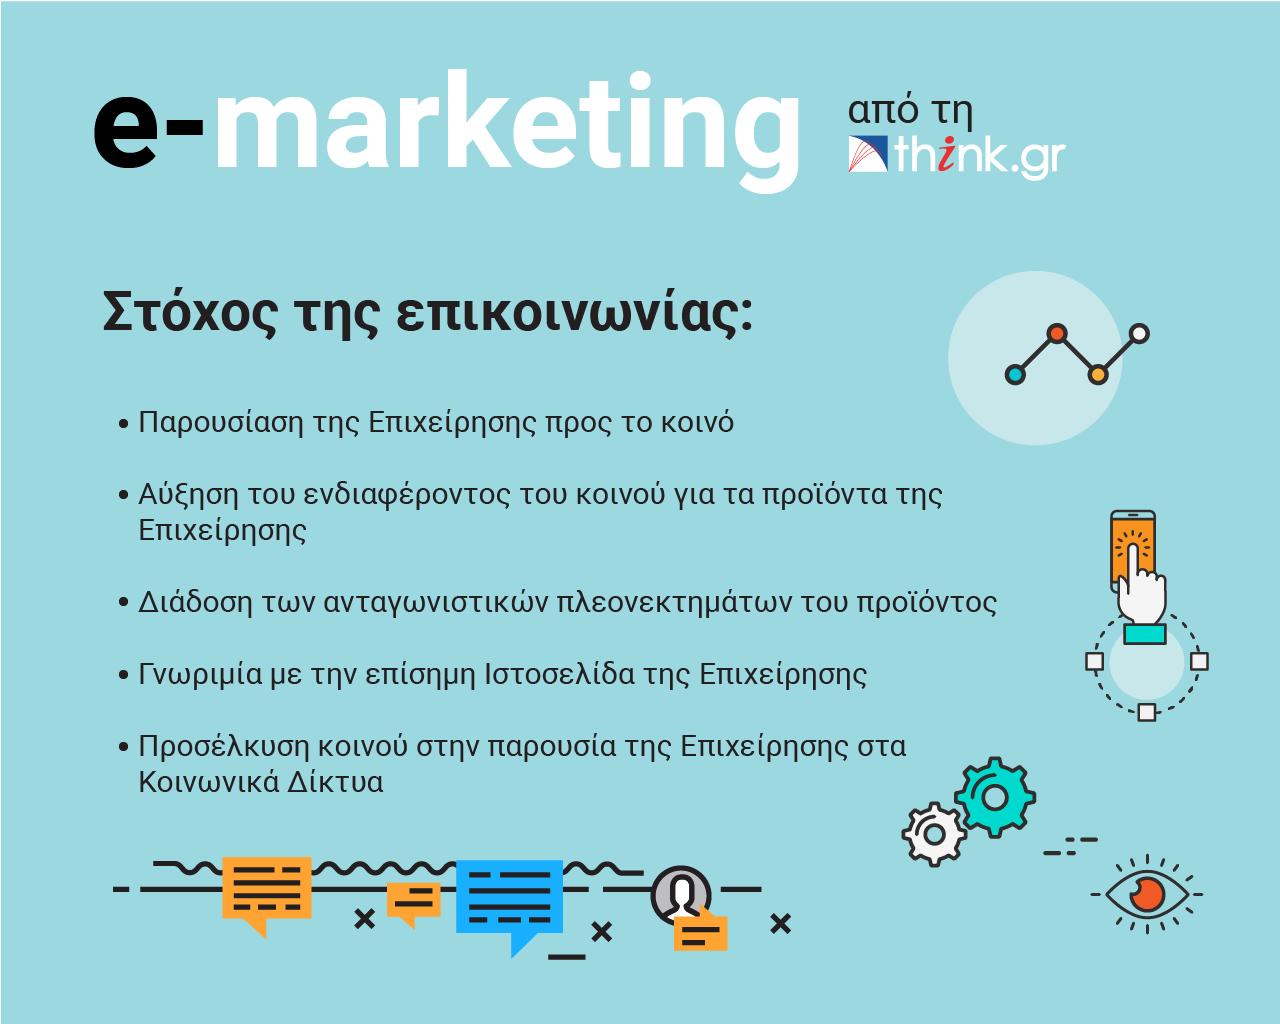 e-marketing από τη think.gr ΑΕ